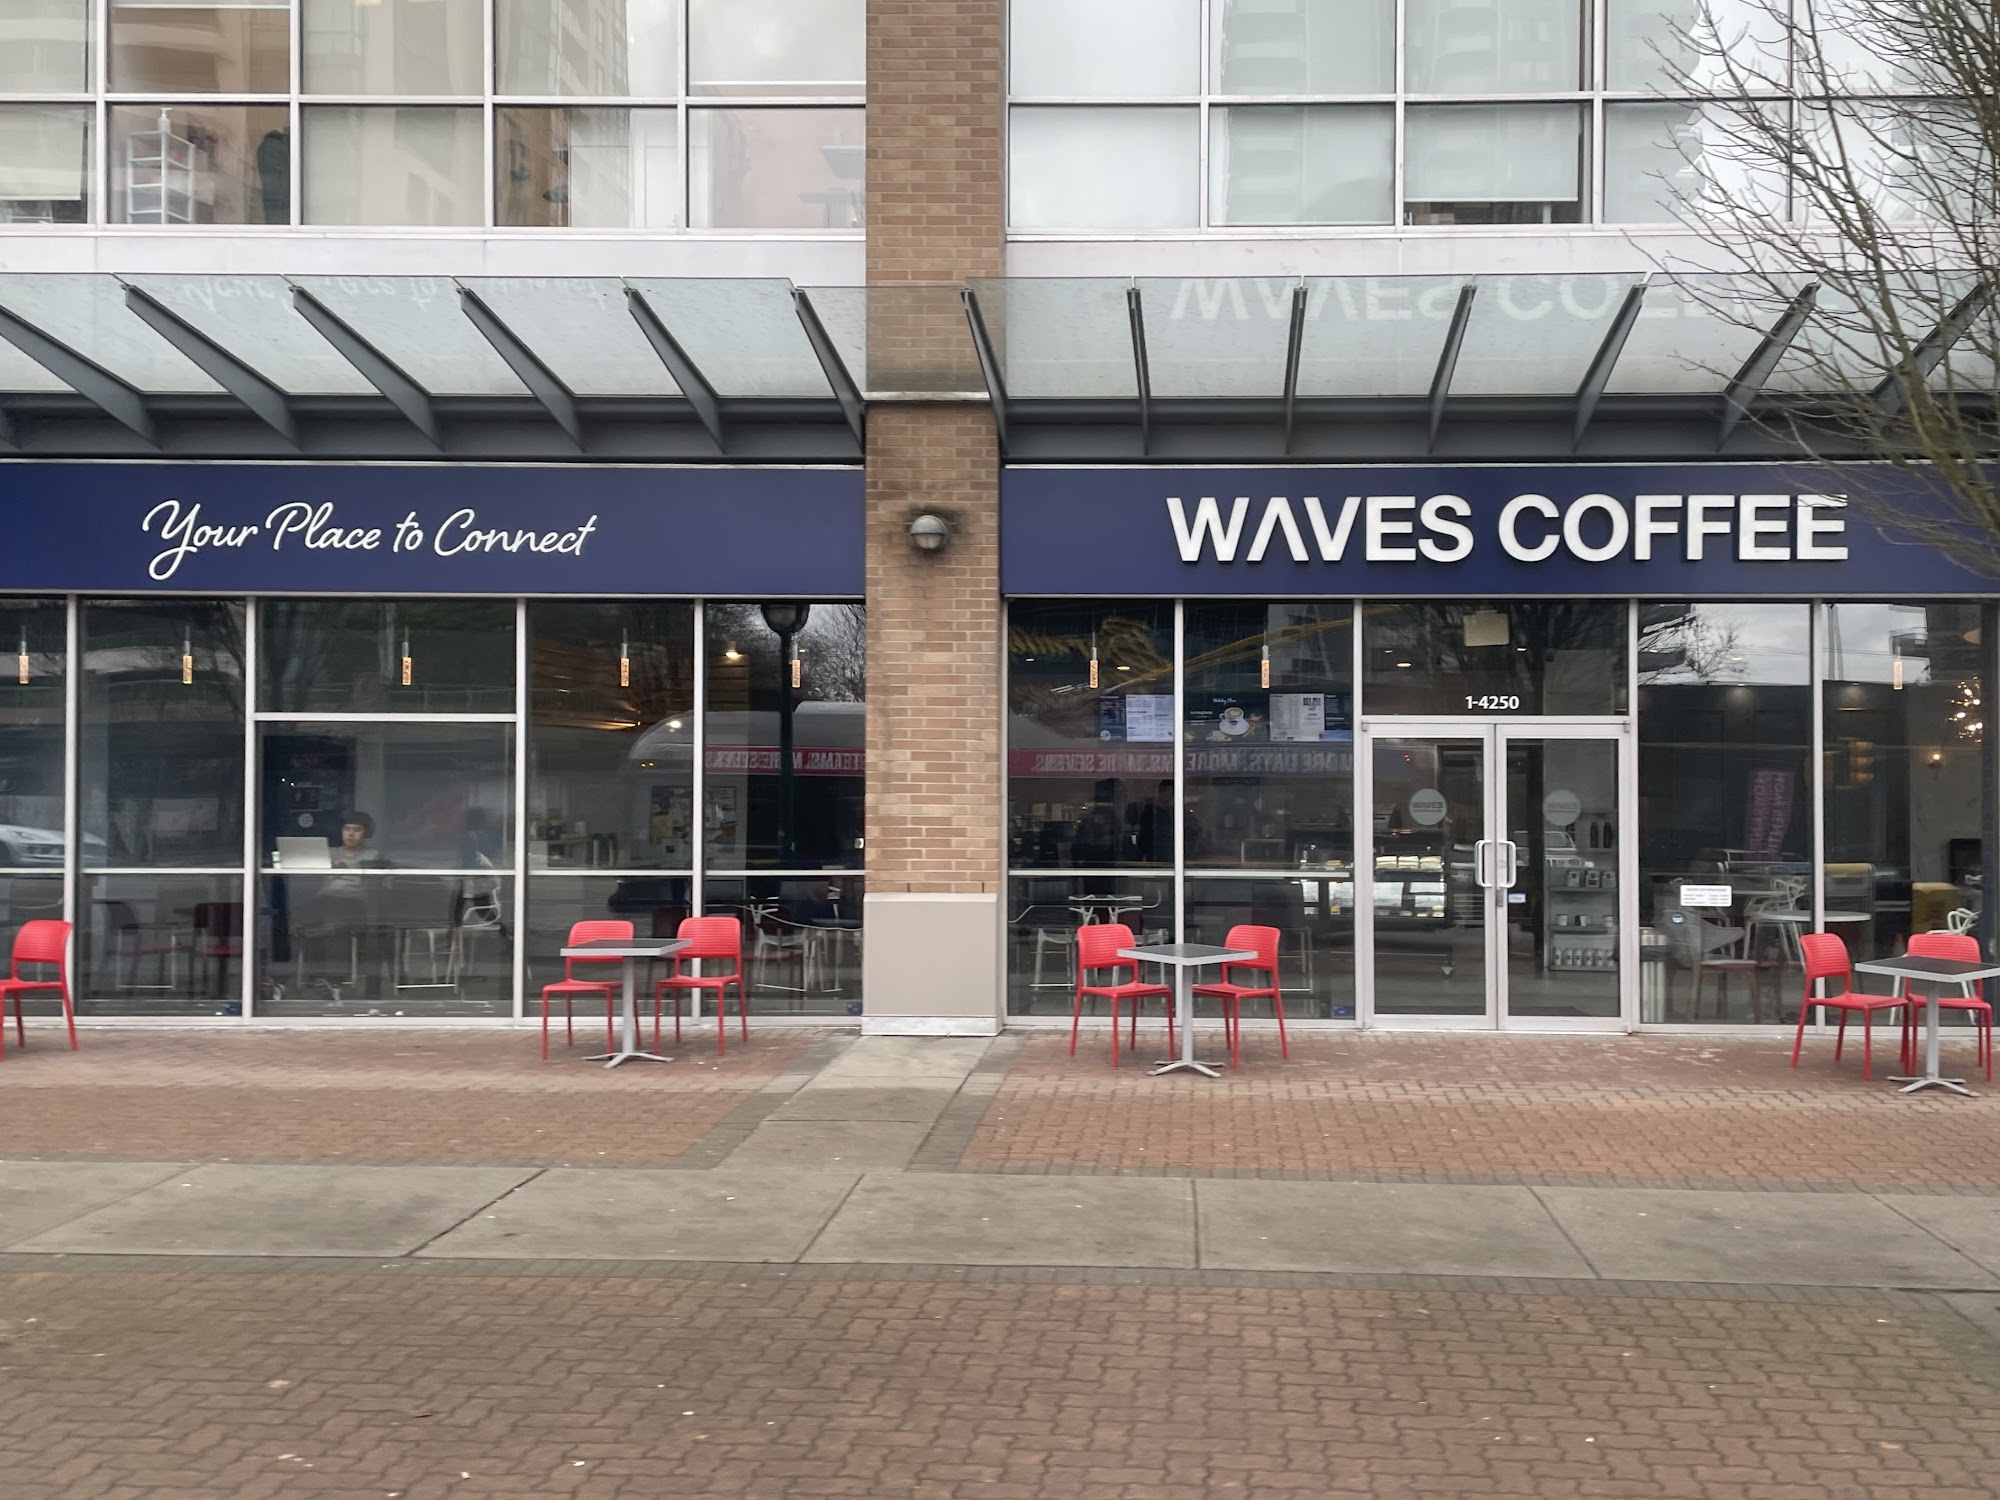 Waves Coffee House - Kingsway